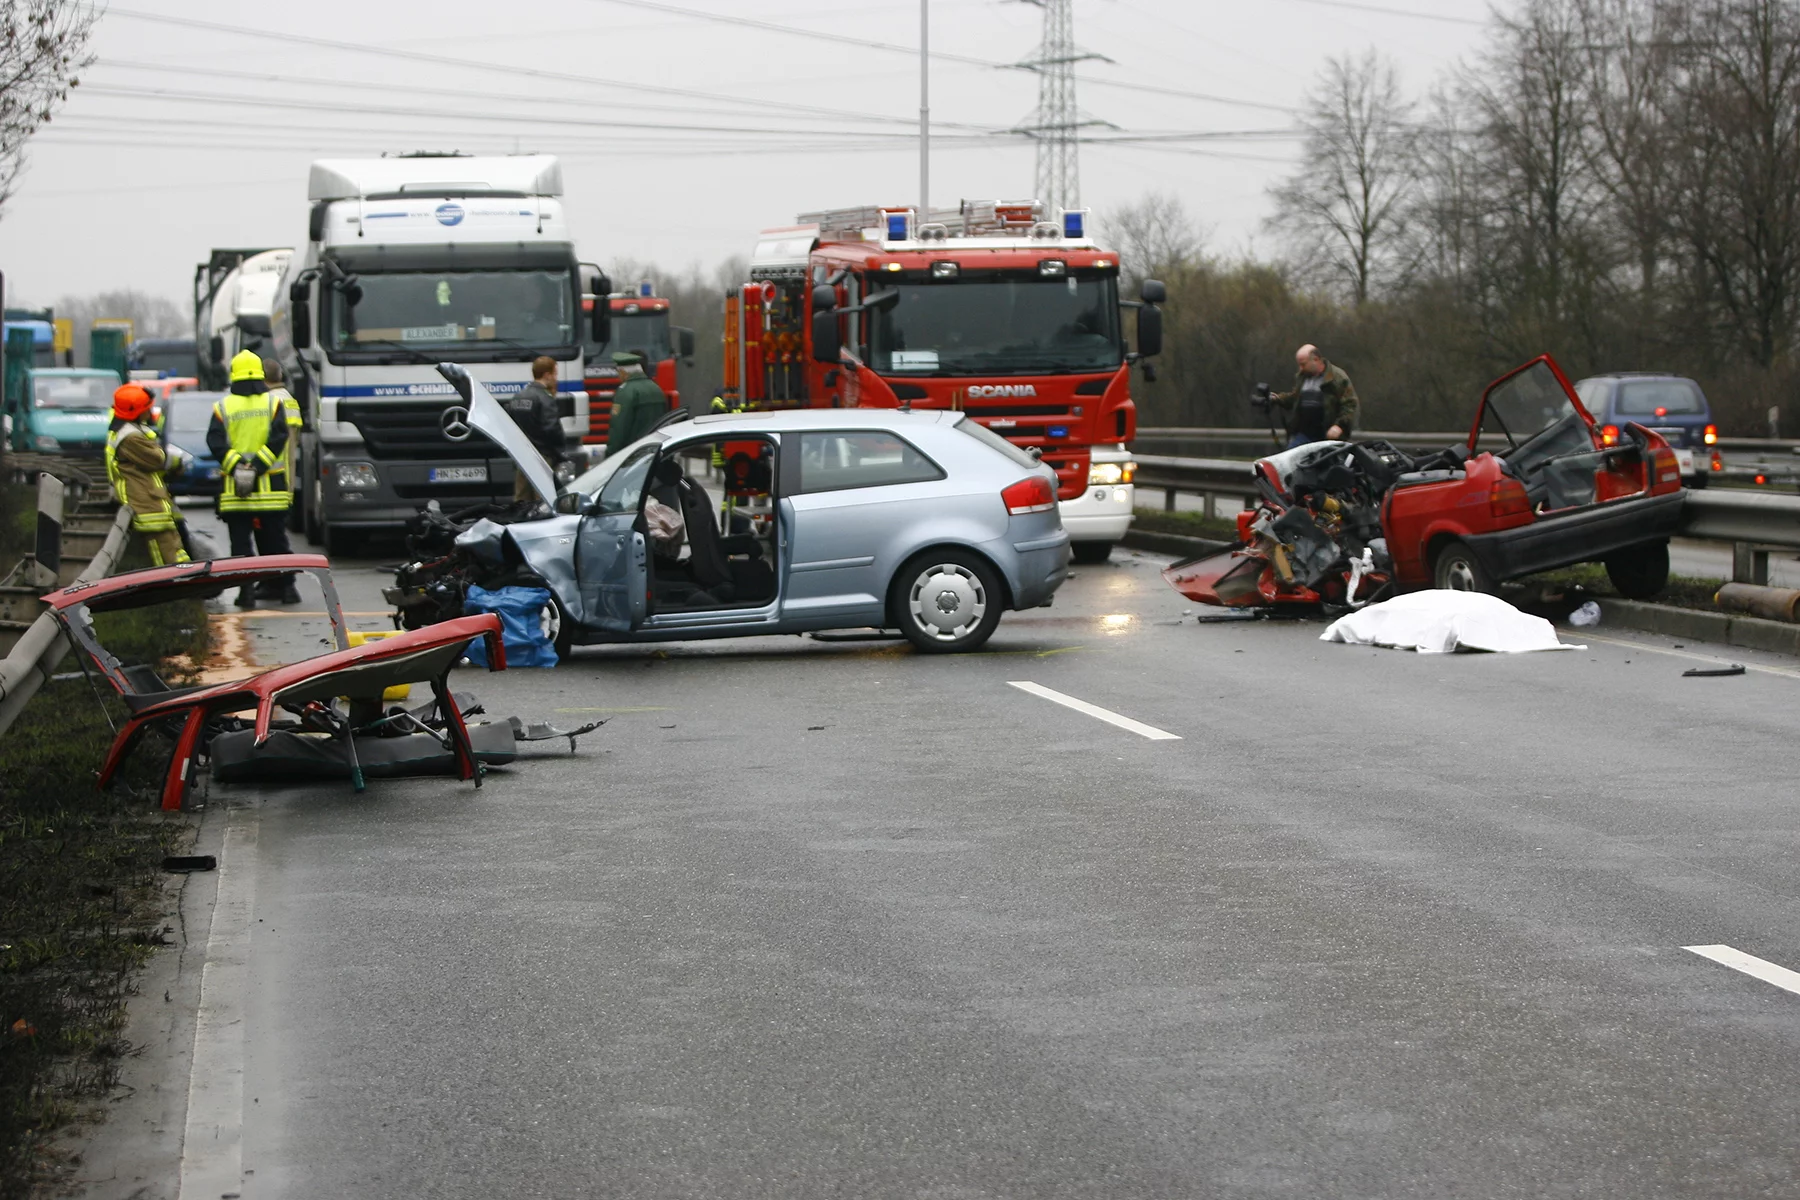 A car crash on an Autobahn in Germany